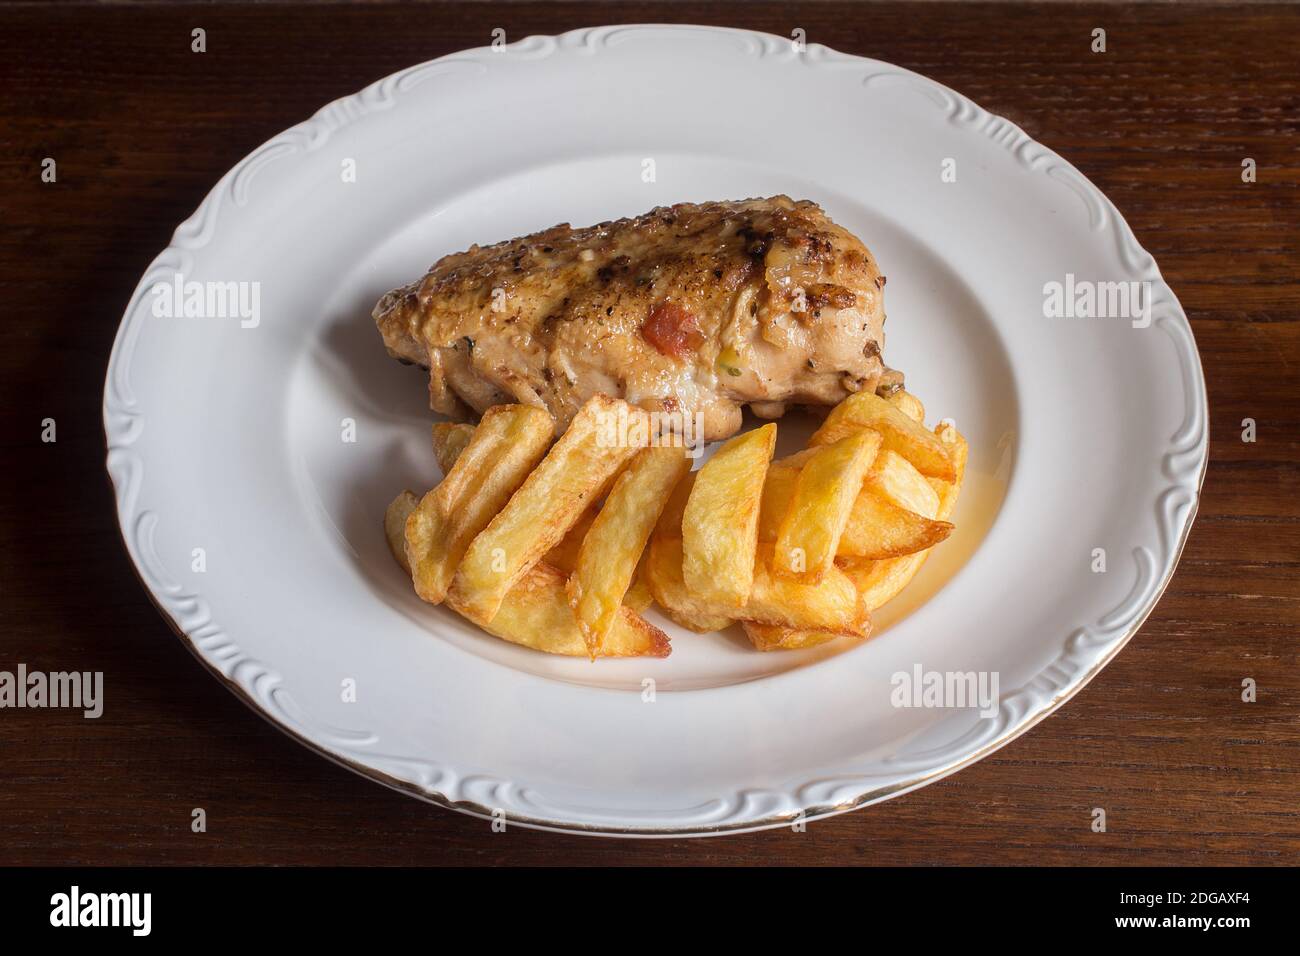 gourmet food presentation chicken